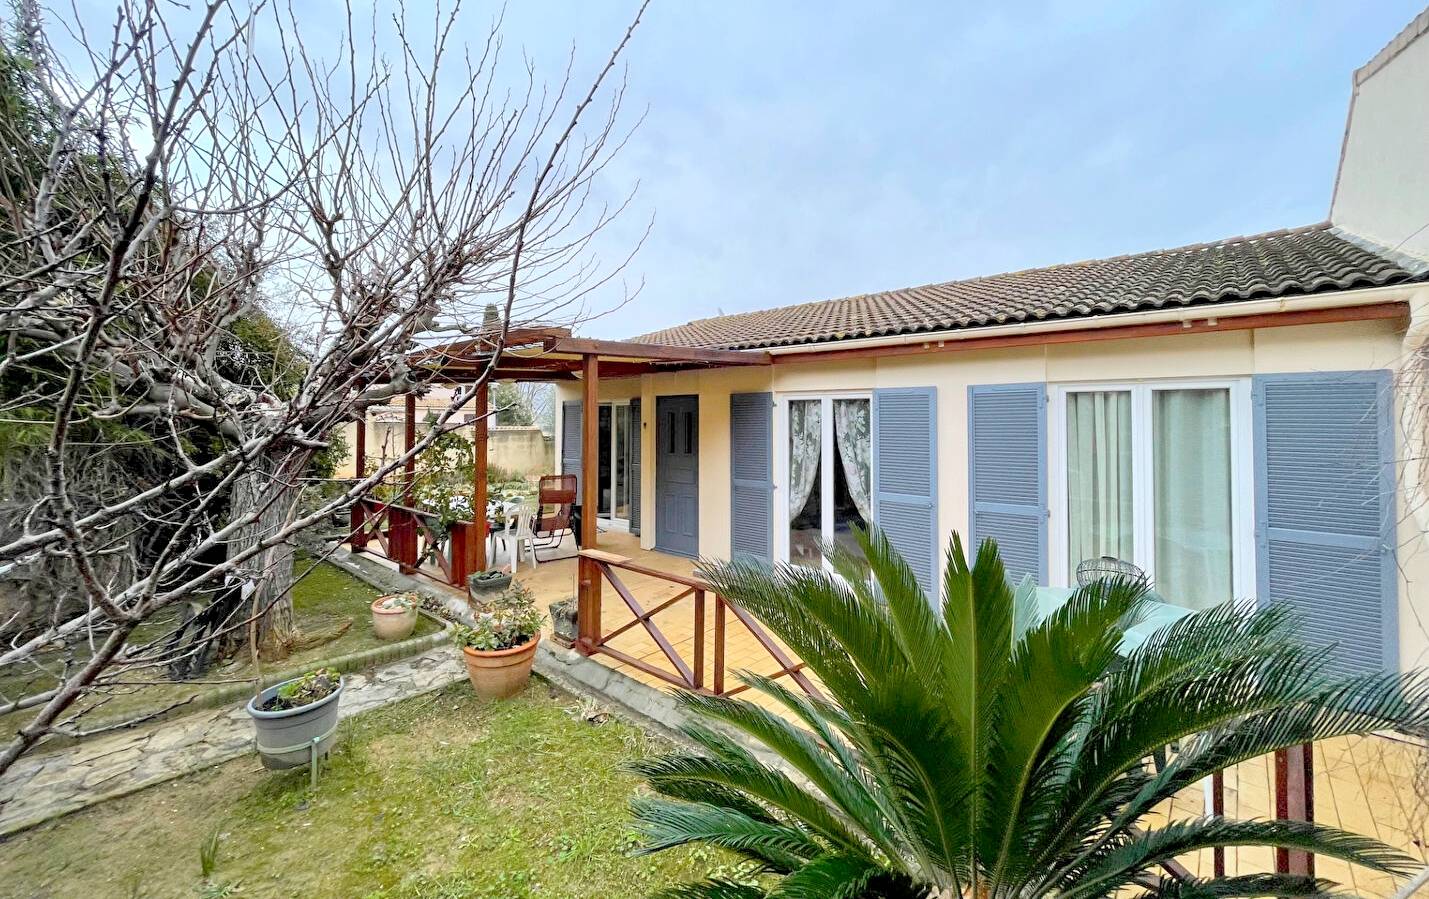 Maison de plain-pied à vendre dans la vallée de la Colle d'Artaud, à La Seyne-sur-Mer